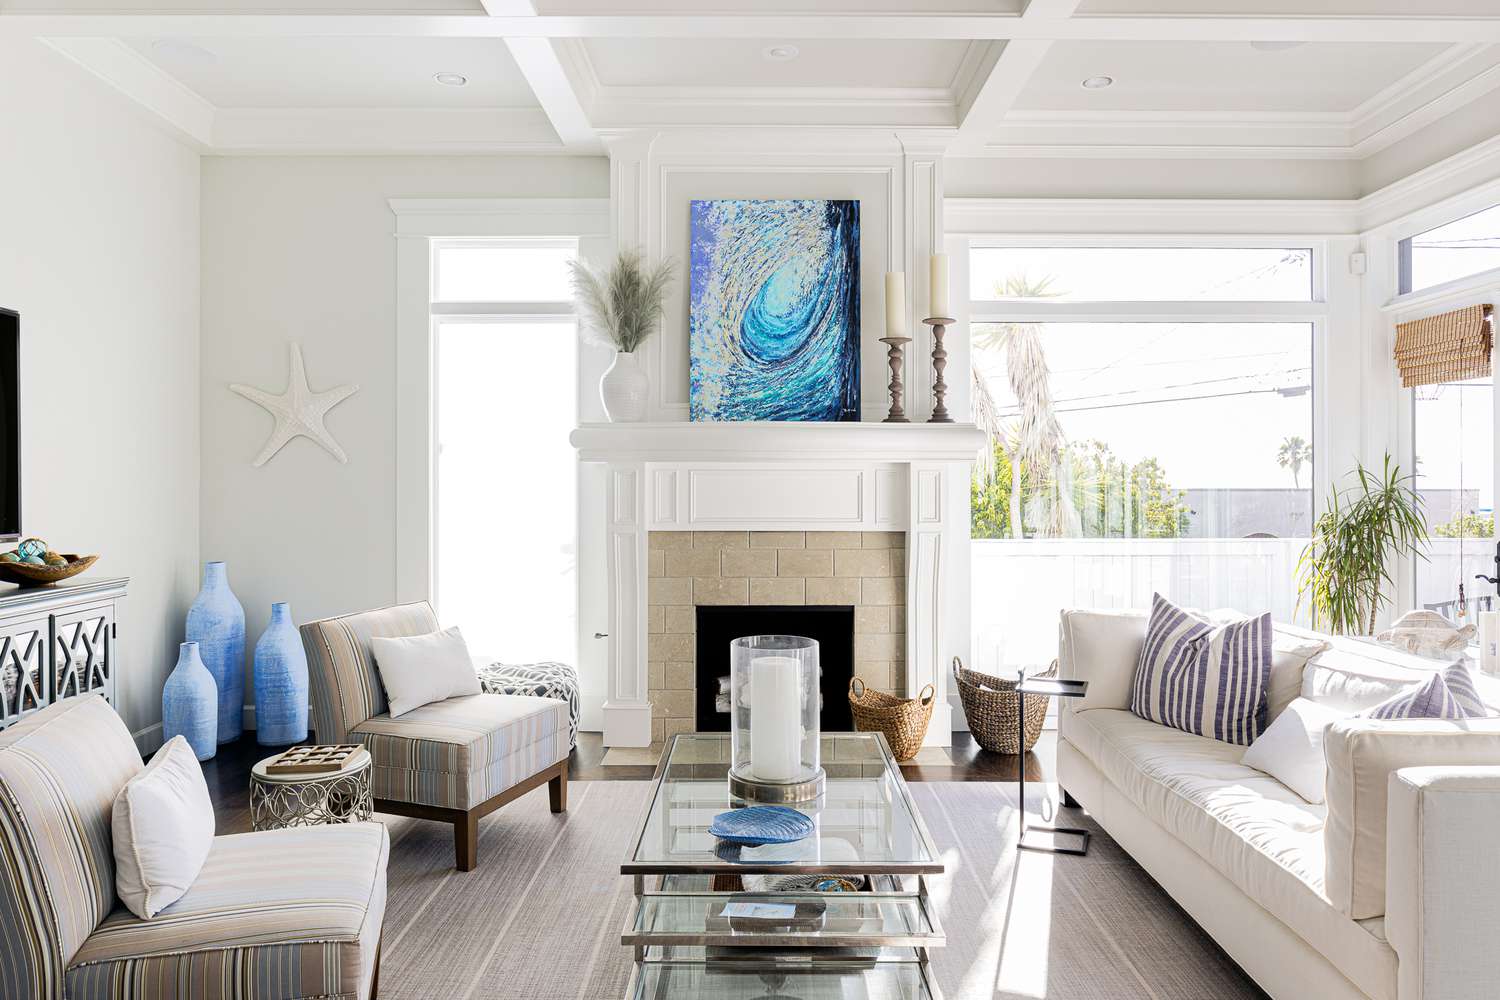 Wohnzimmer im Küstenthema mit einem blauen Gemälde in der Mitte des Raums